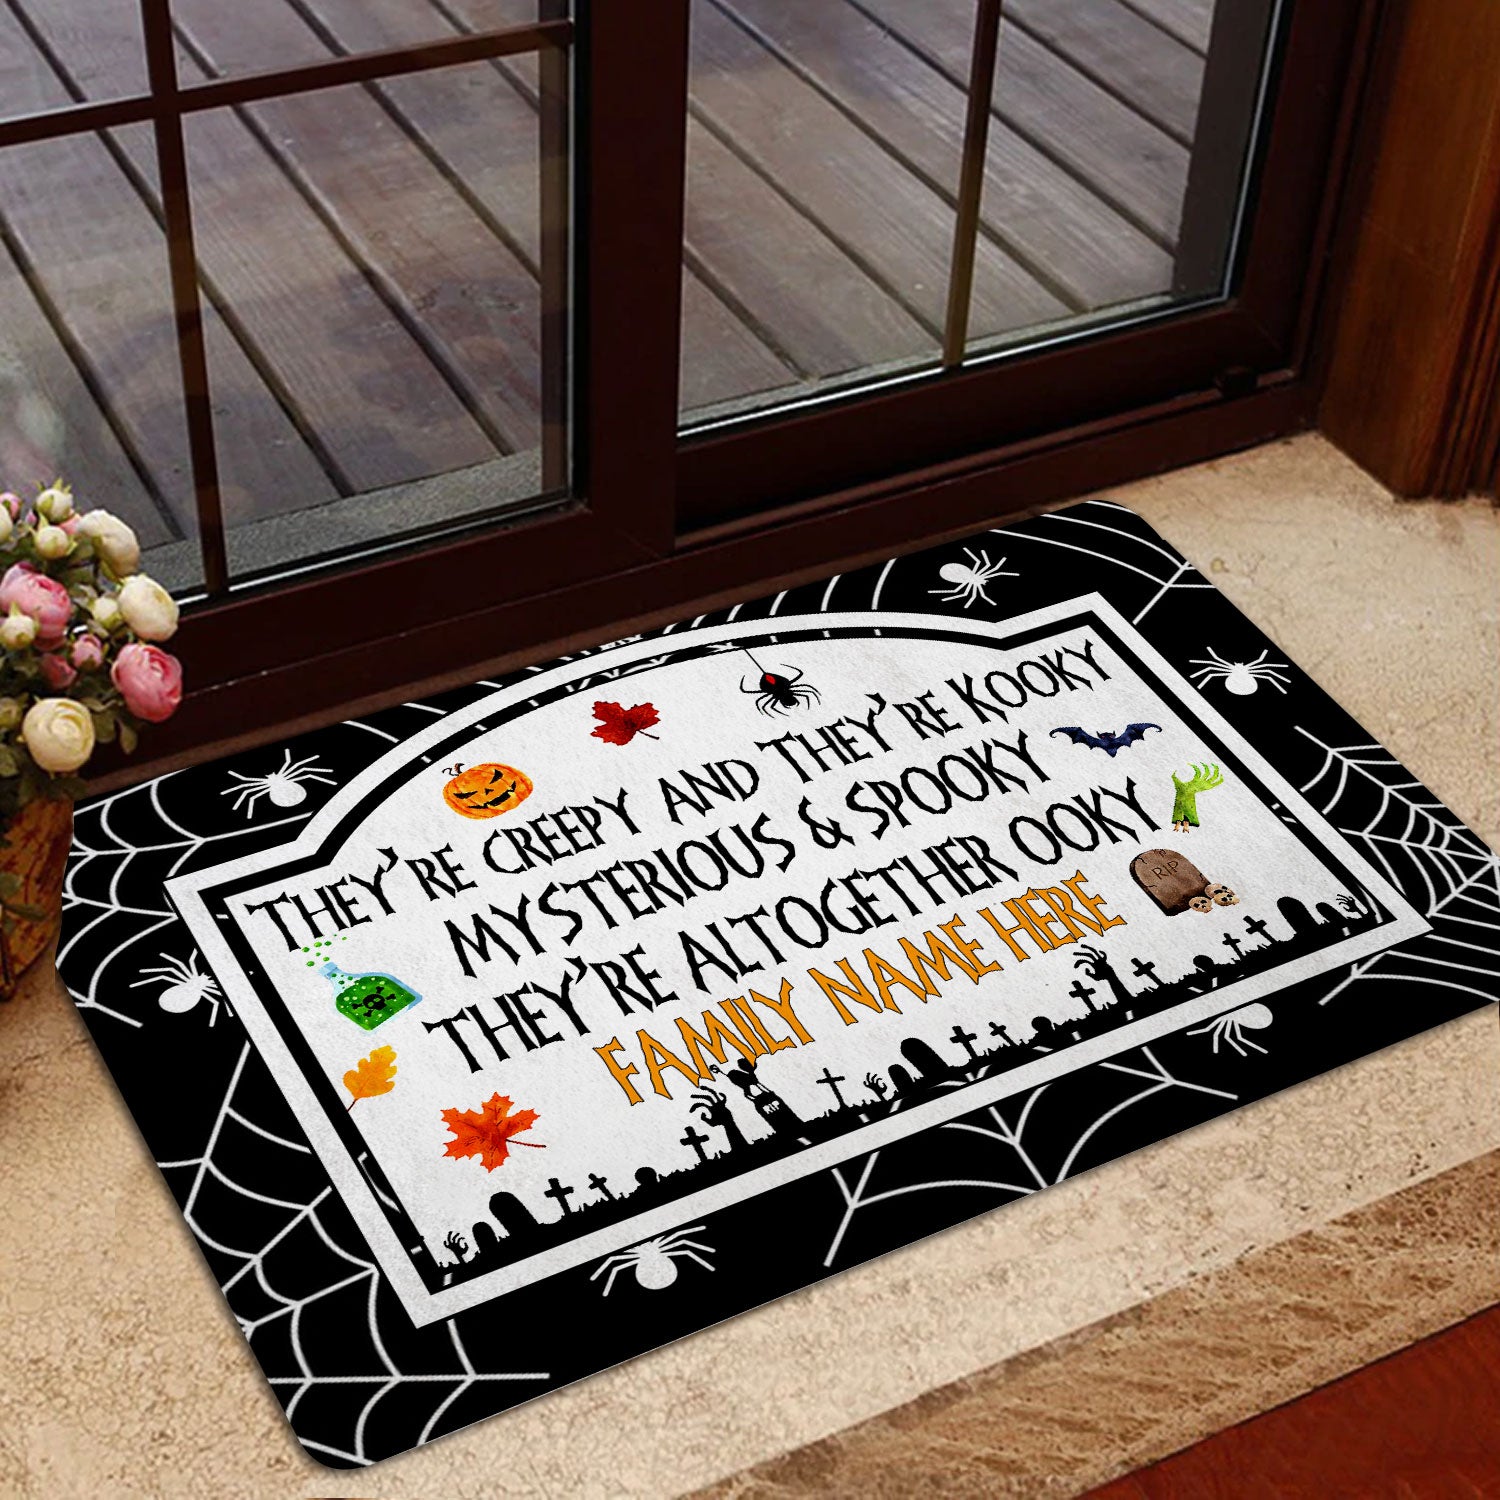 Ohaprints-Doormat-Outdoor-Indoor-Mysterious-Family-Creepy-Halloween-Custom-Personalized-Name-Rubber-Door-Mat-2018-